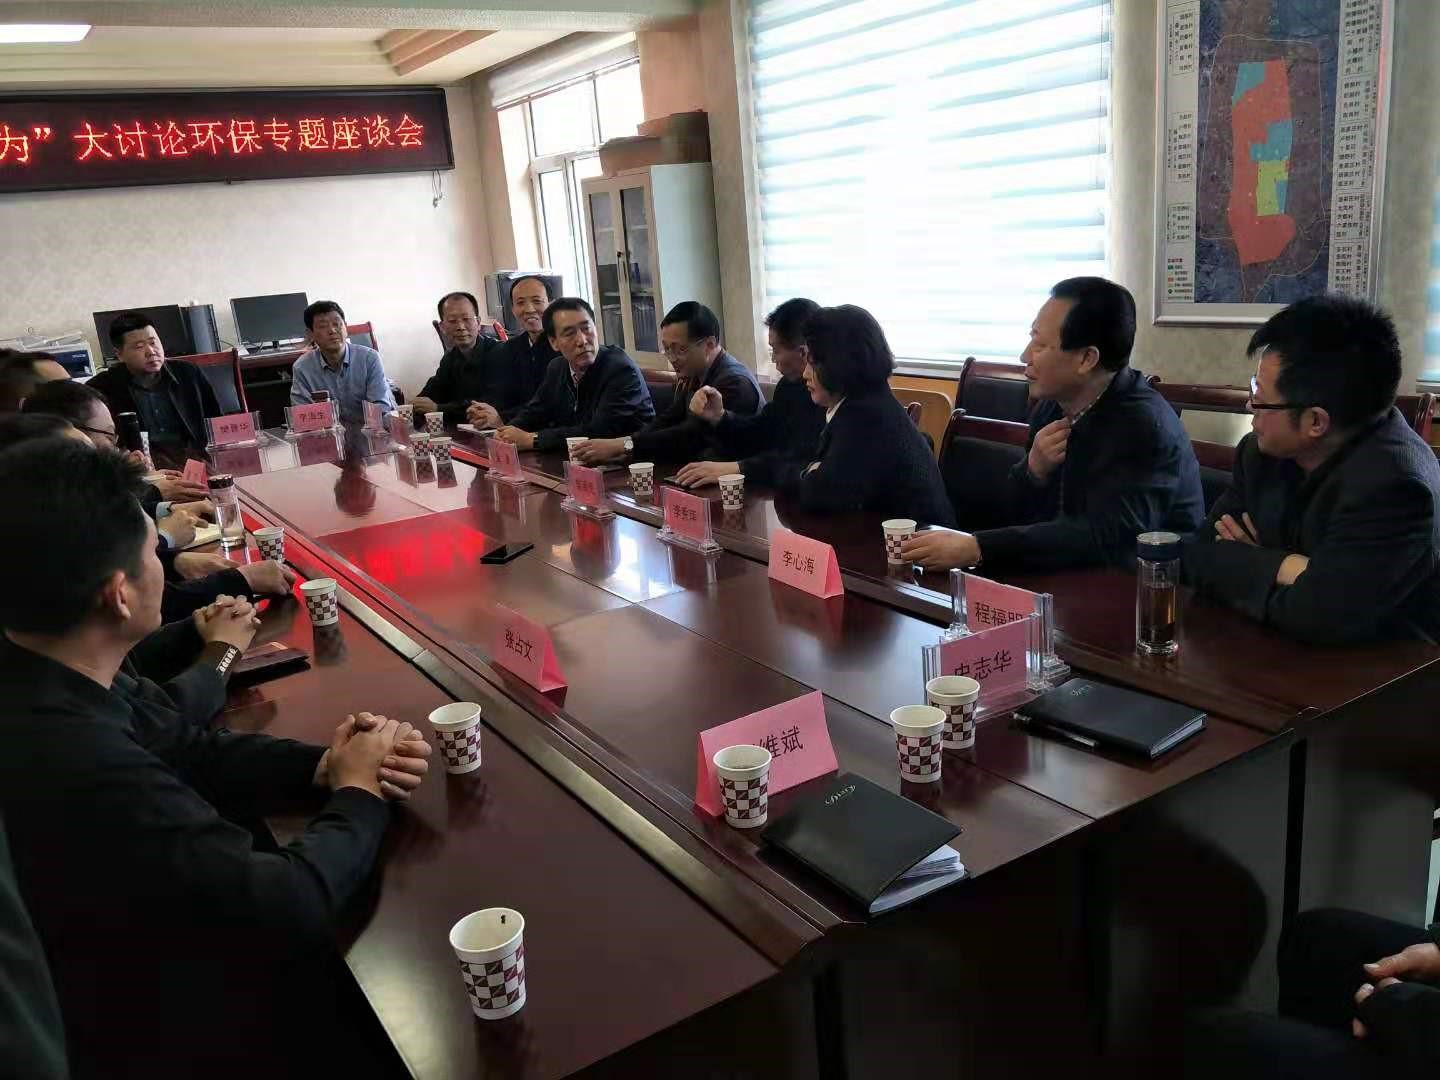 忻州市环保志愿者协会组织召开“改革创新、奋发有为”大讨论环保专题座谈会暨绿色公益分会举行挂牌仪式